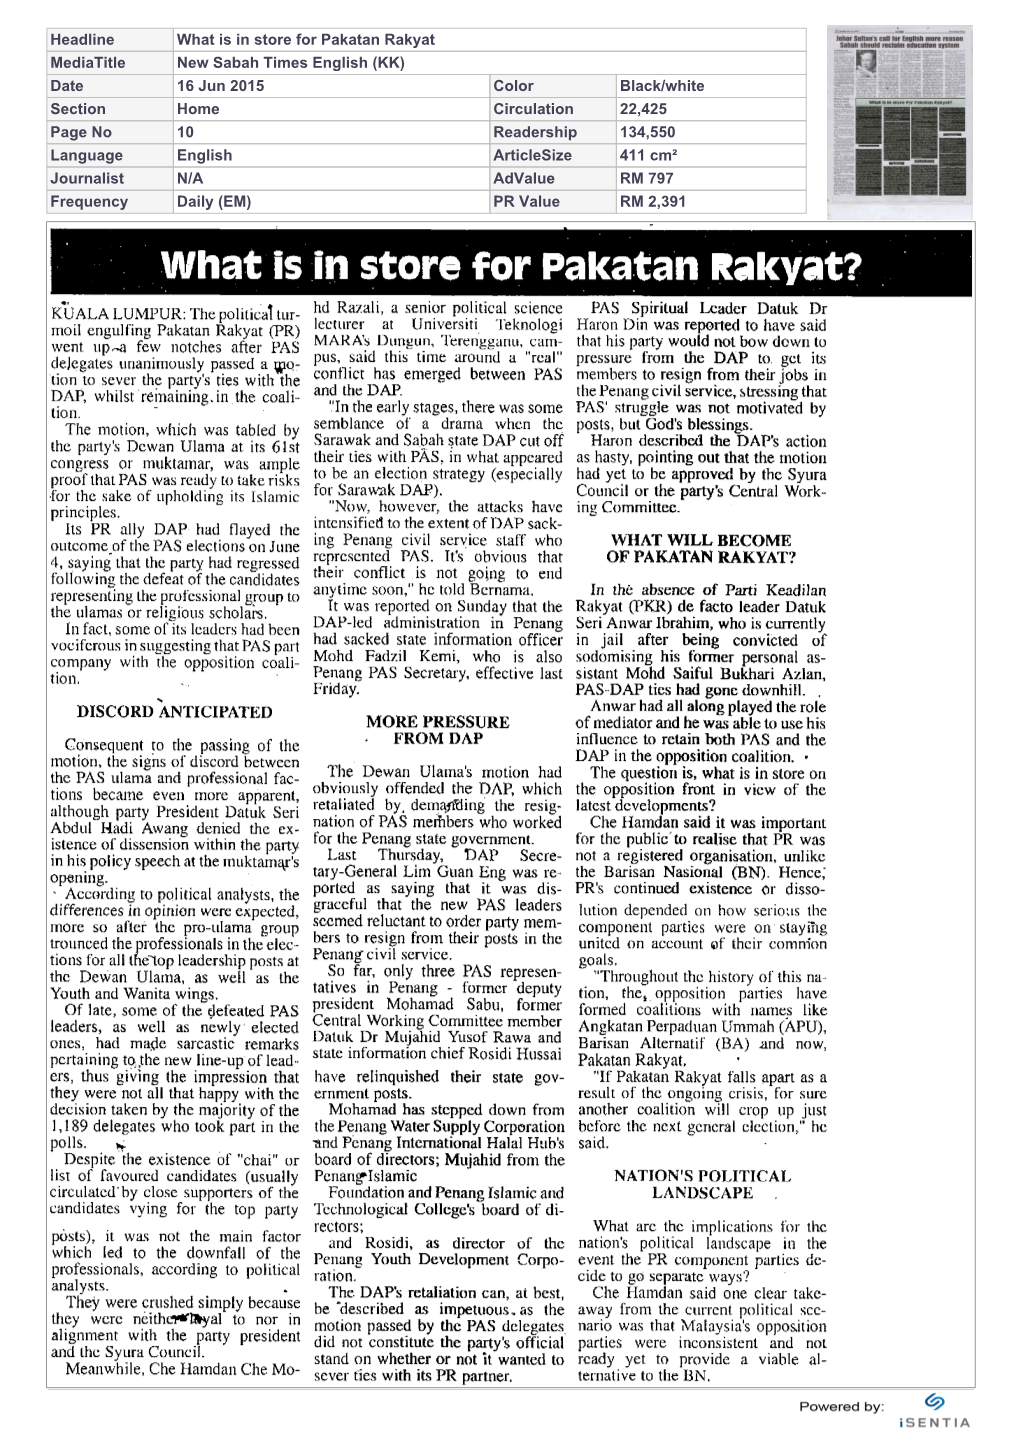 What Is in Store for Pakatan Rakyat?